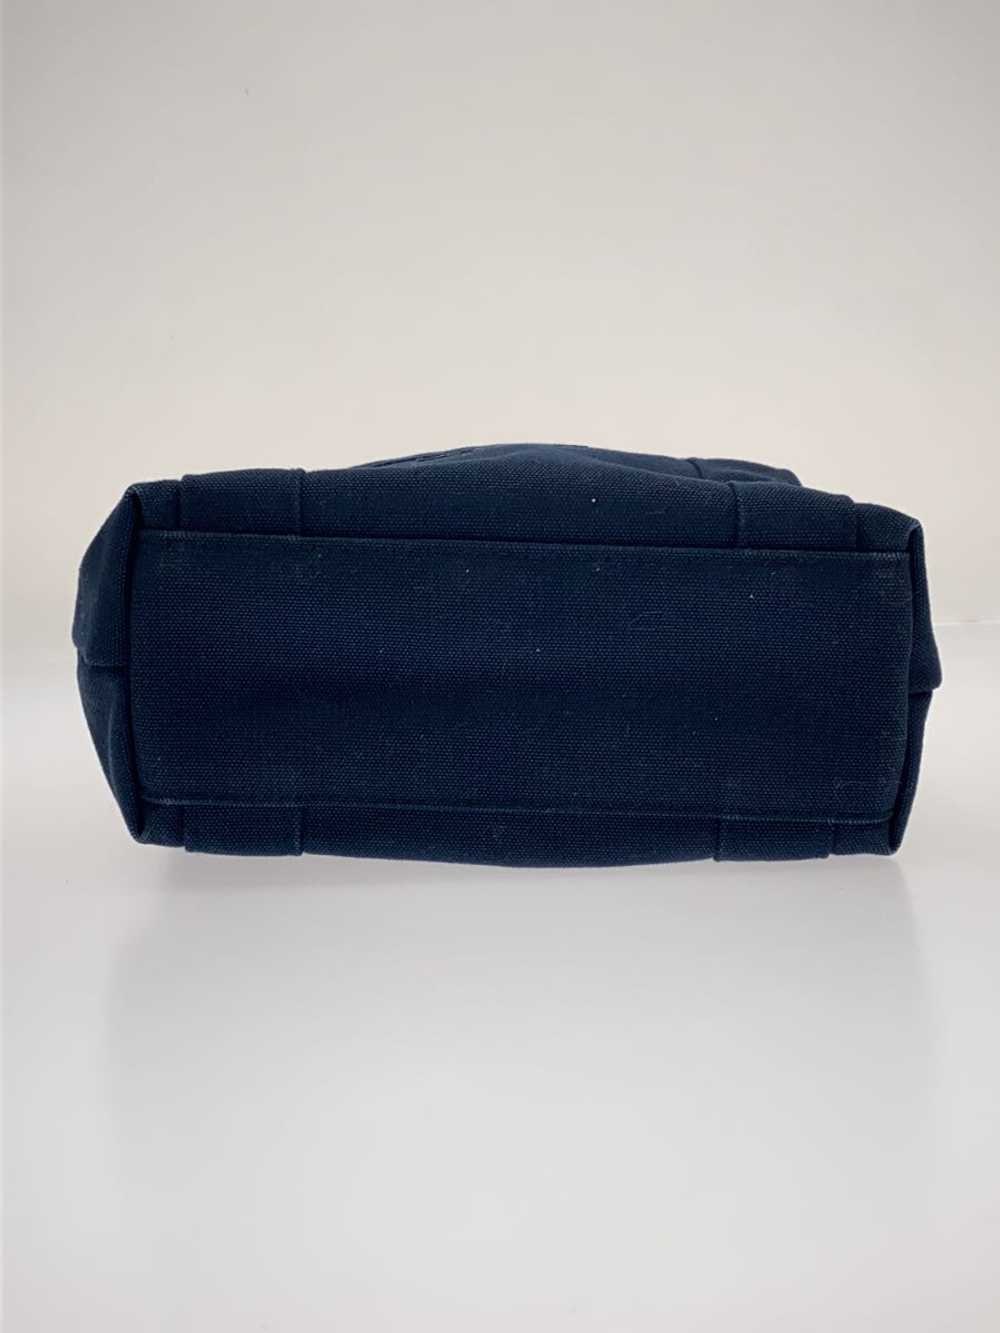 Marimekko Mini Tote Bag/Canvas/Nvy/Plain Bag - image 4